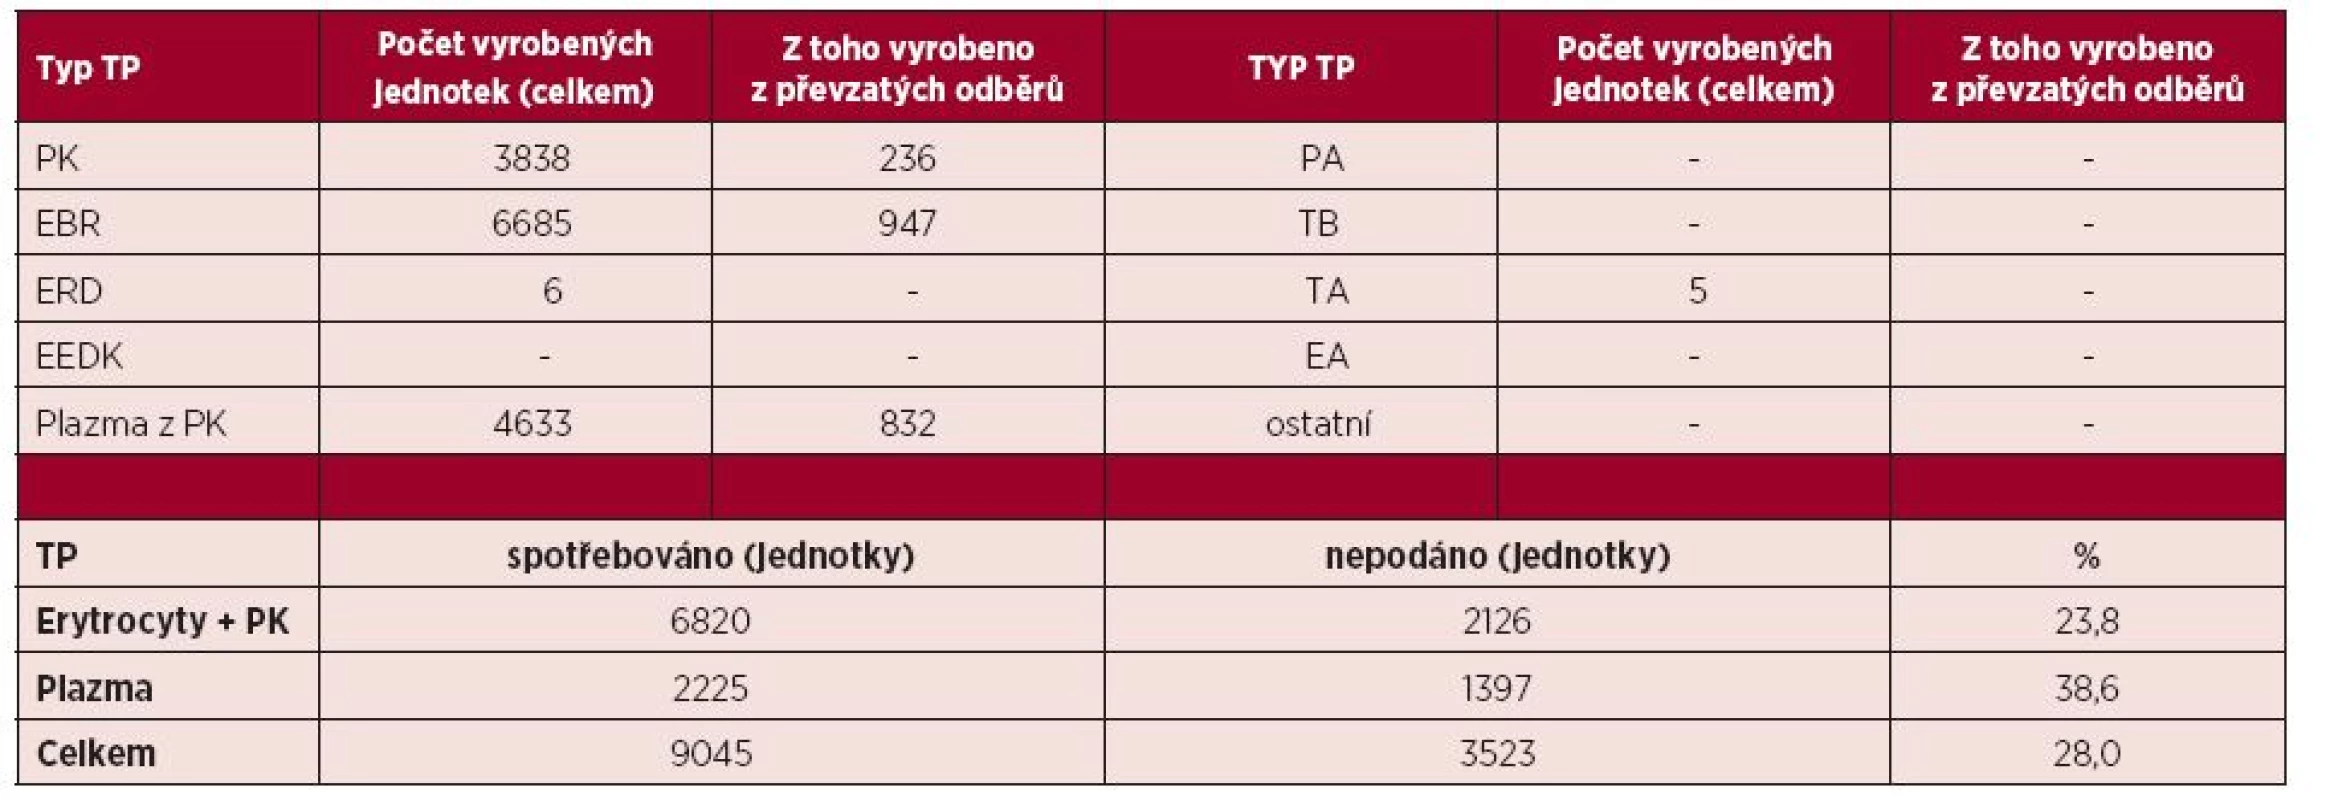 Autotransfuze v České republice v roce 2014 – transfuzní přípravky